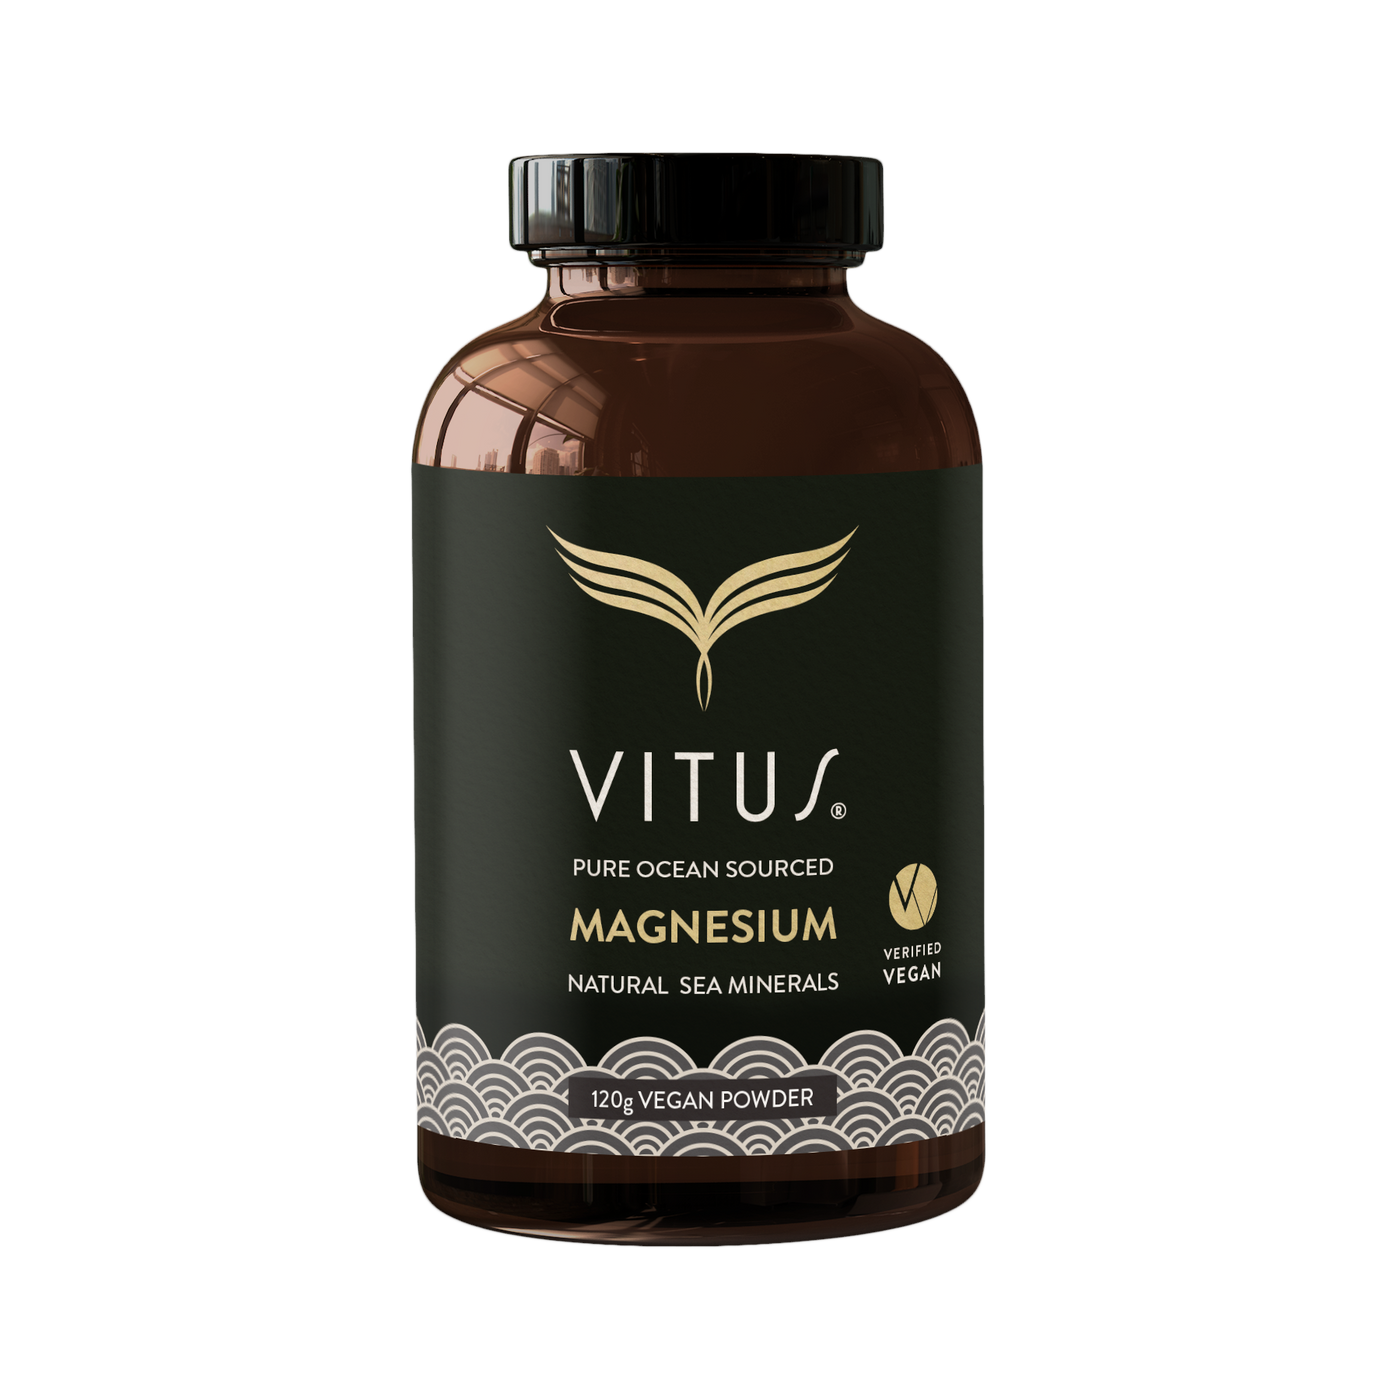 Vitus Magnesium Natural Sea Minerals 120g vegan powder